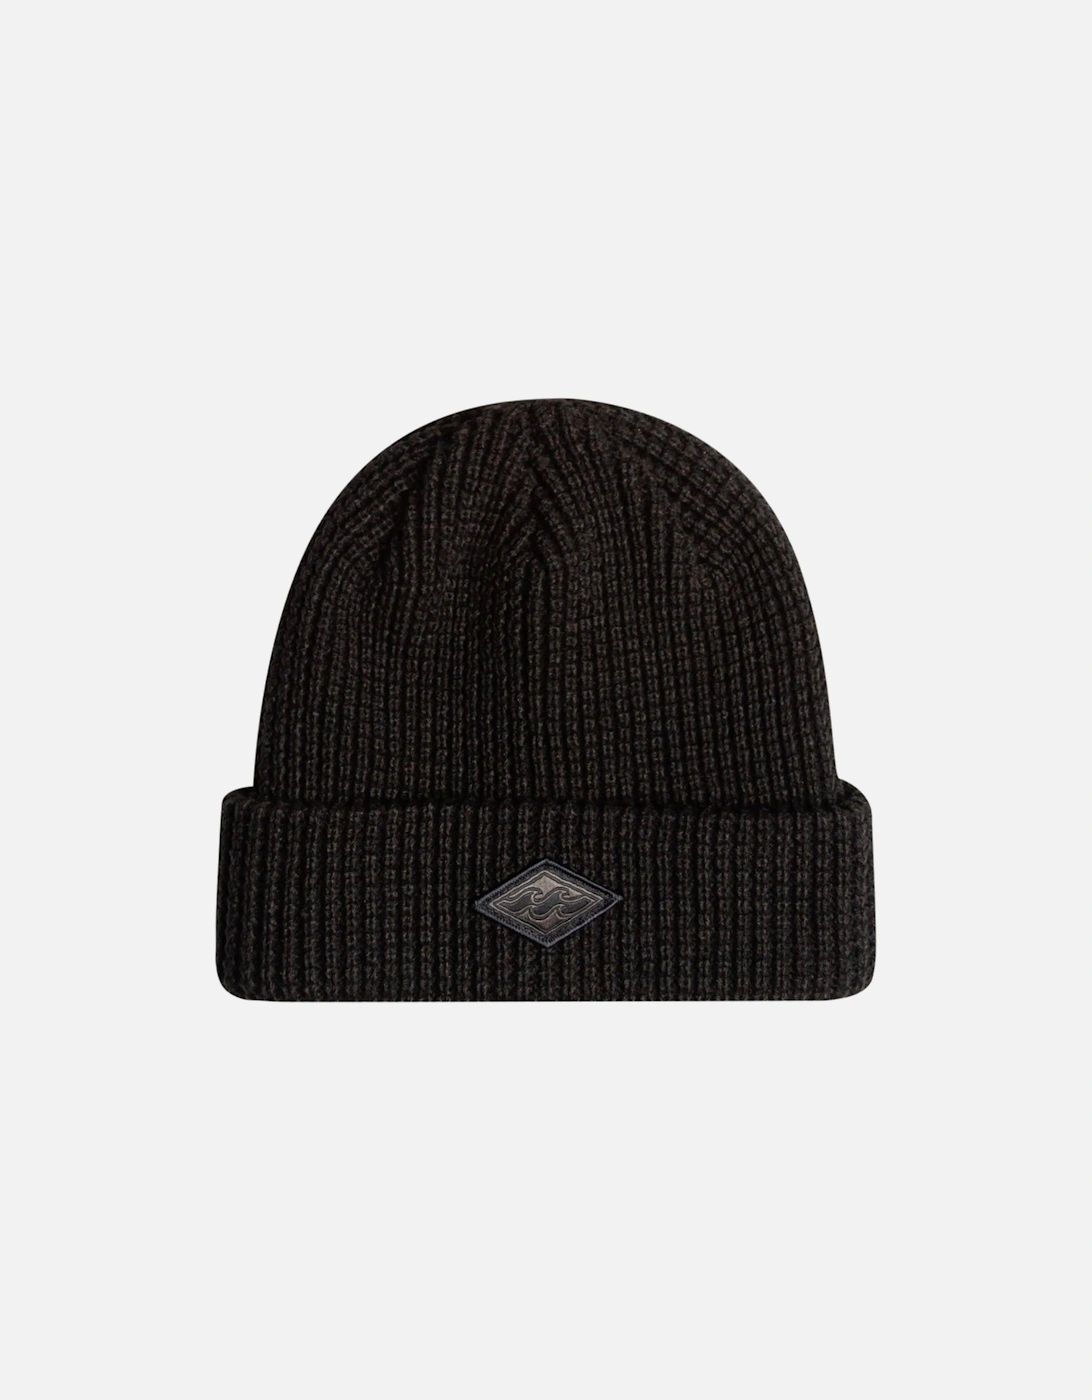 Mens Grill Fine Knit Cuffed Winter Warm Beanie Hat - Black, 3 of 2